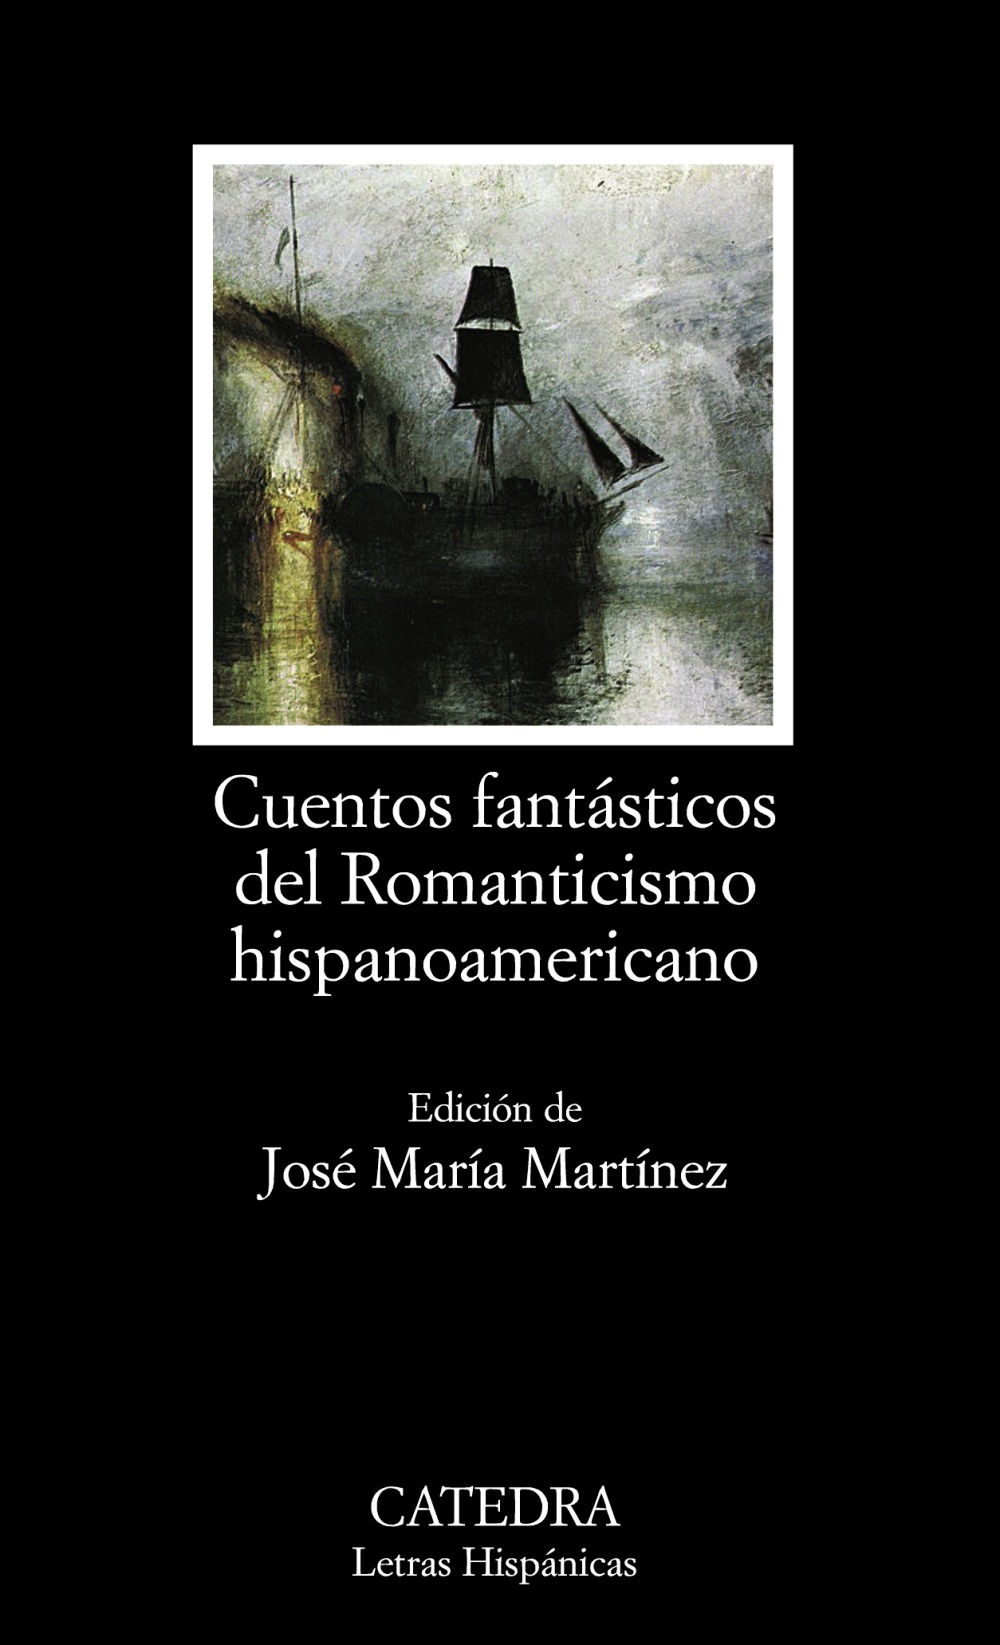 Arriba 66+ imagen cuentos del romanticismo hispanoamericano